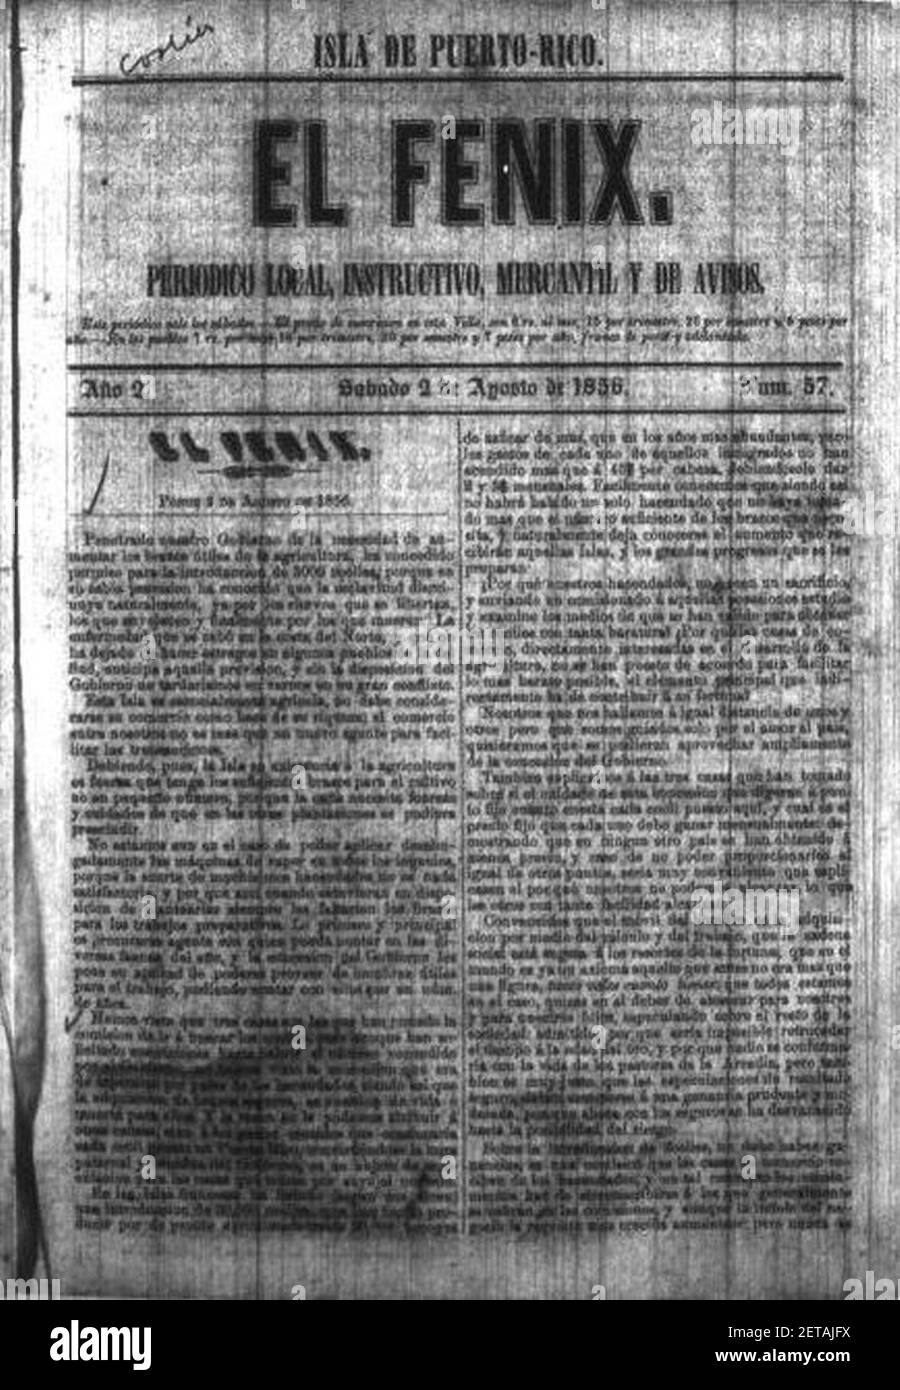 Periódico El Fénix, Ponce, Puerto Rico, edicion de 2 de Agosto de 1856 (DP31v2). Stock Photo